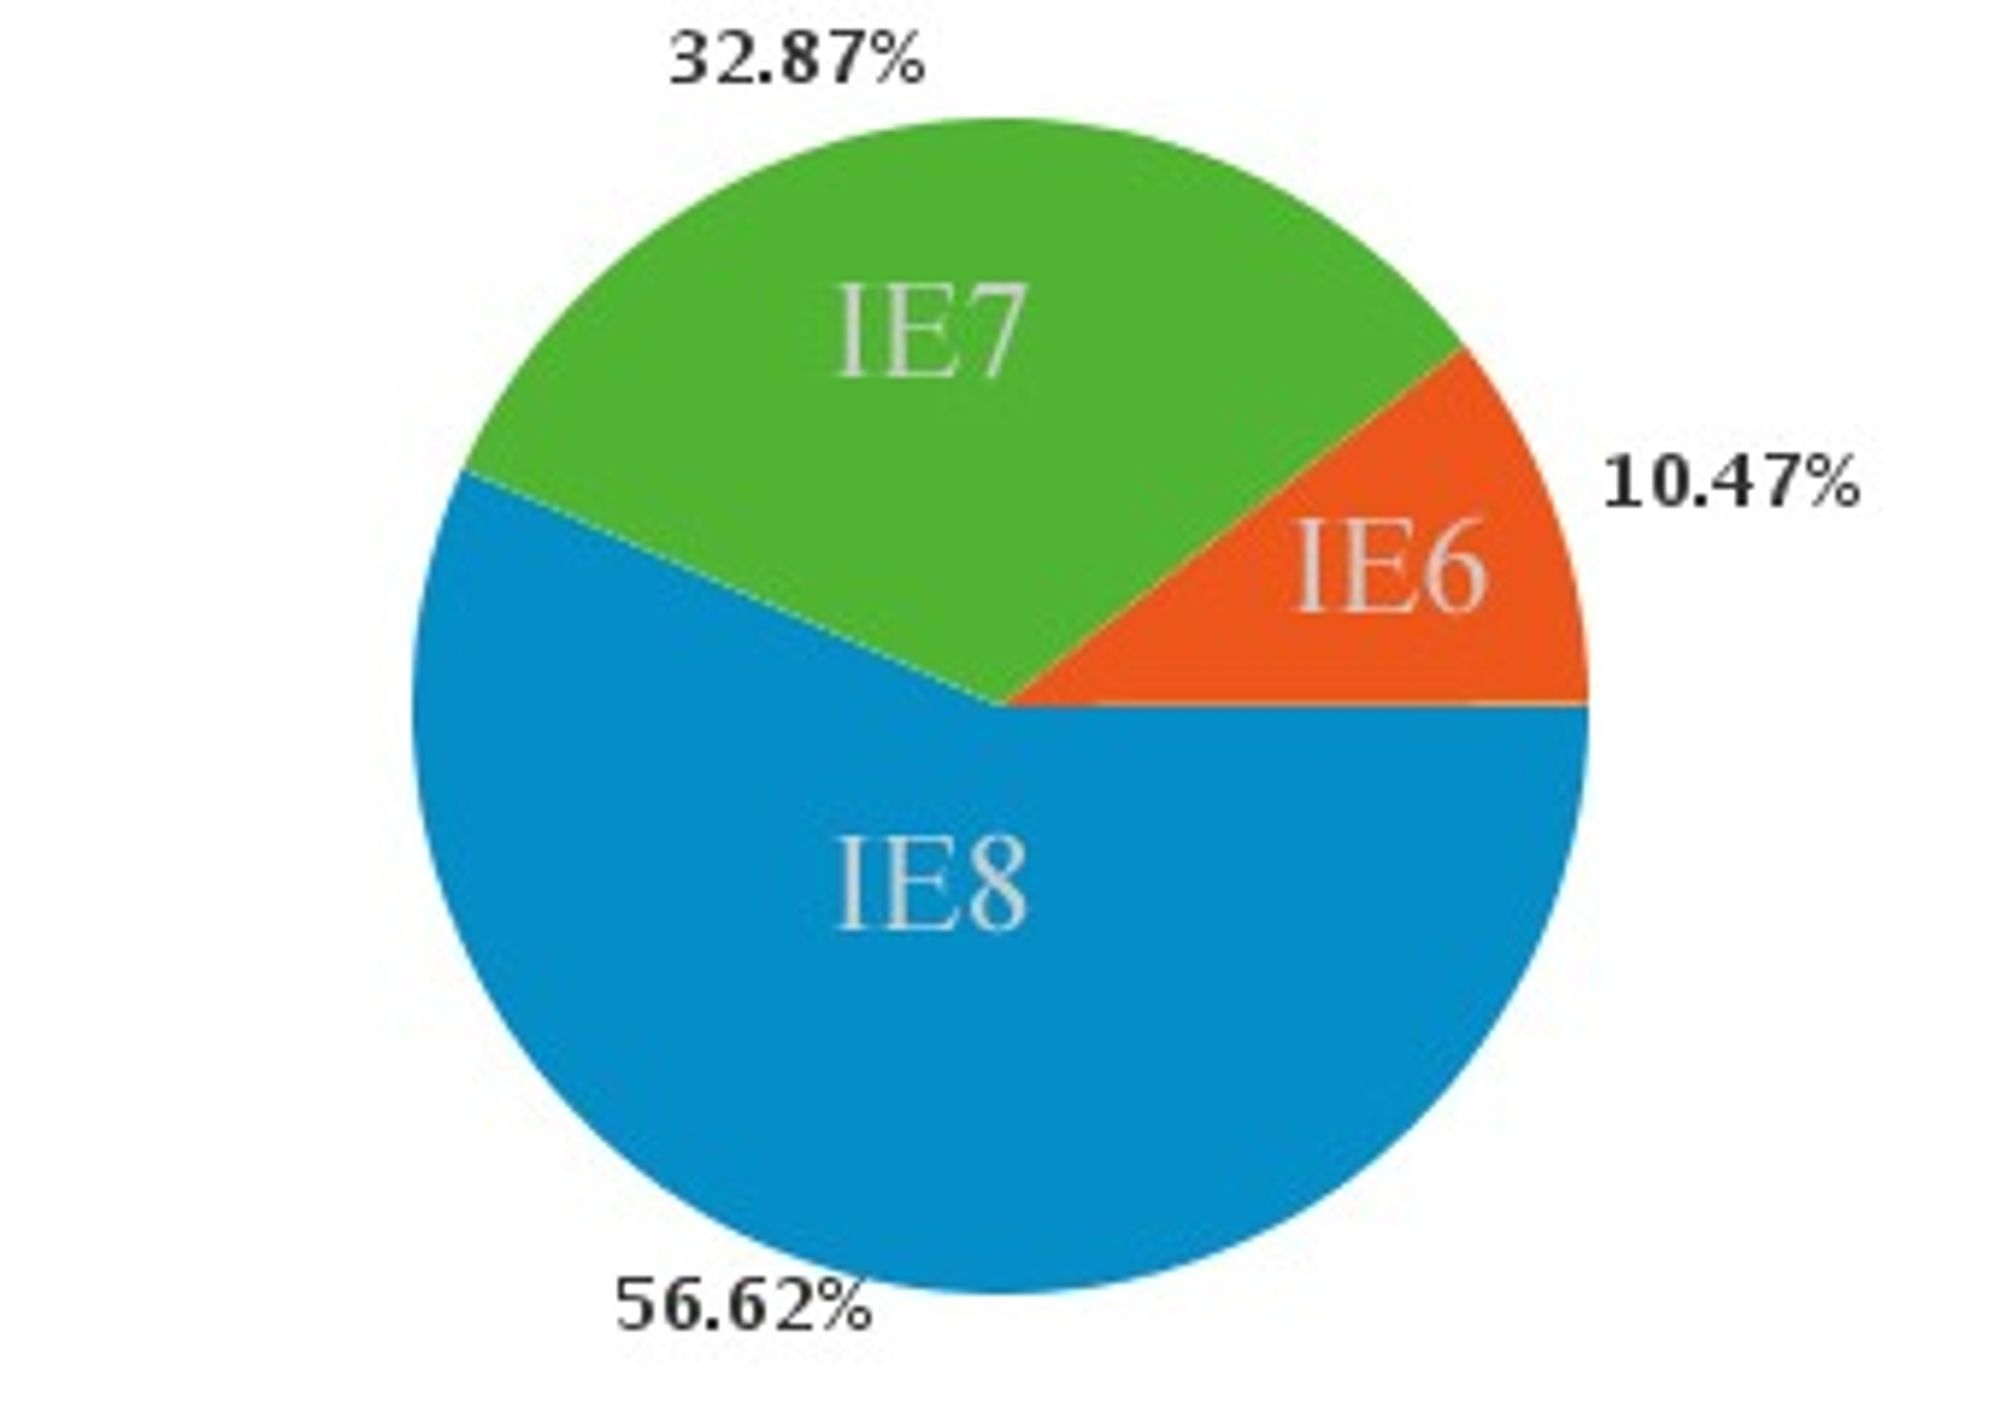 Fordelingen på versjon blant IE-brukerne som besøkte digi.no i uke 34, 2009.